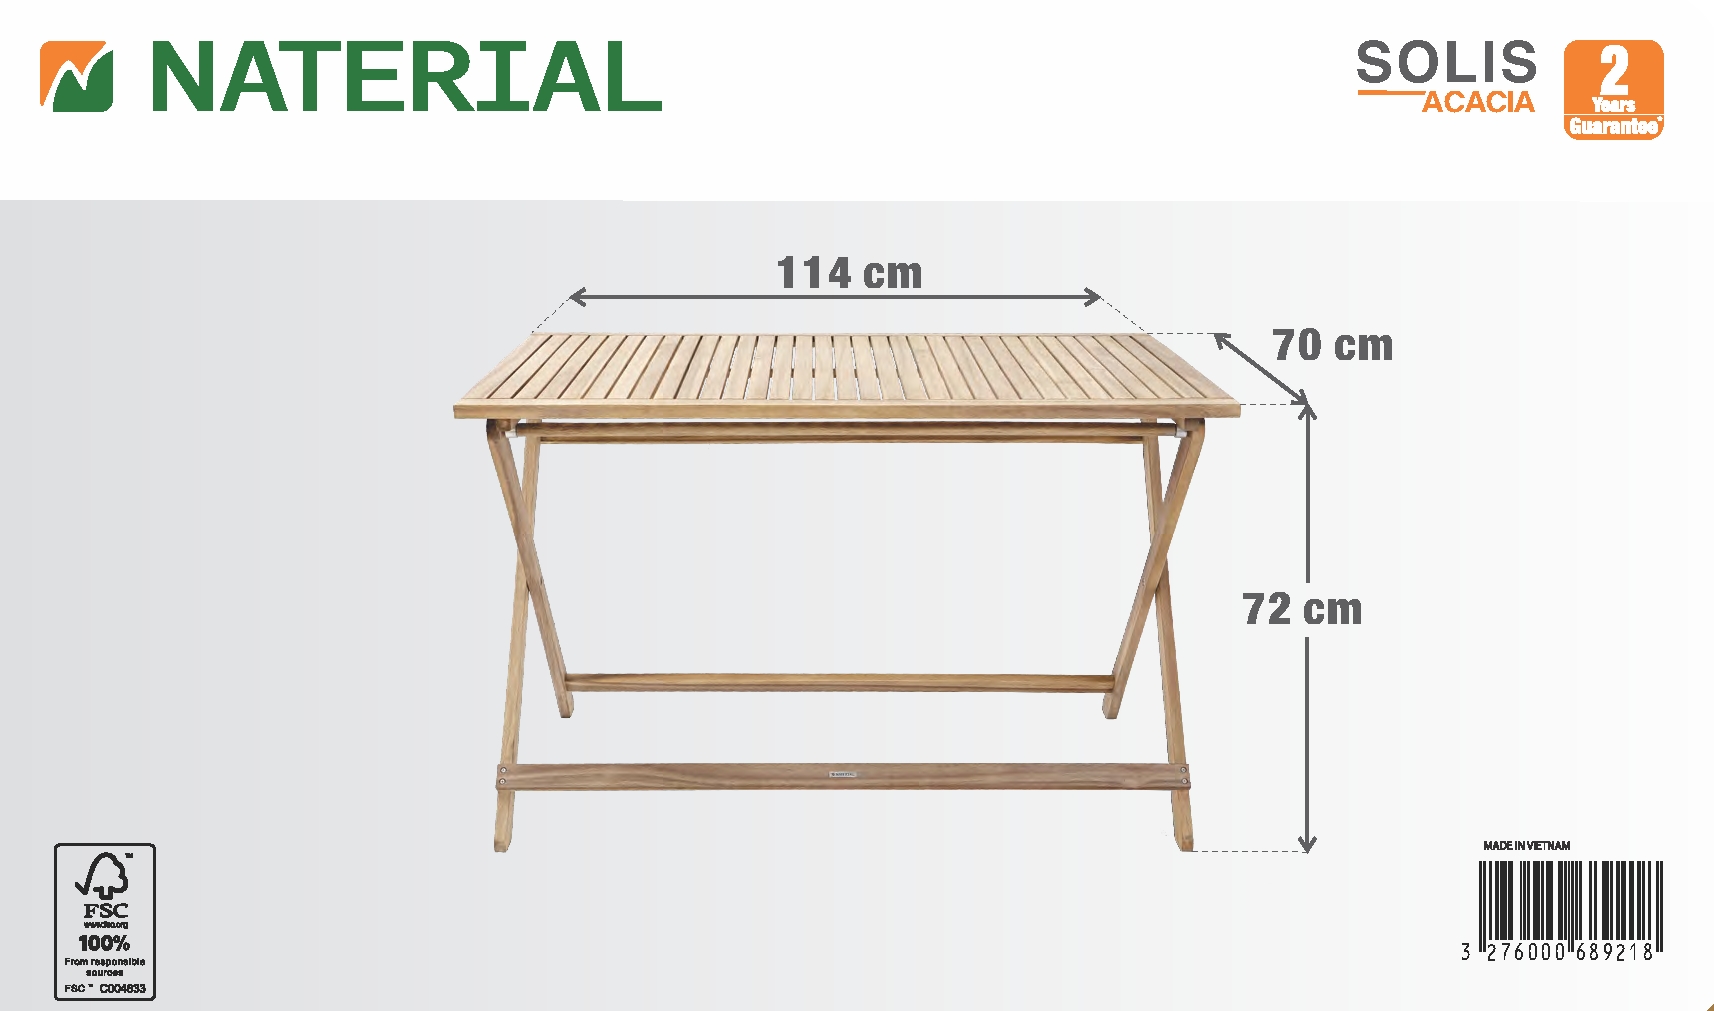 Tavolo da giardino rettangolare Solis NATERIAL con piano in legno L 70 x L 114 cm - 15